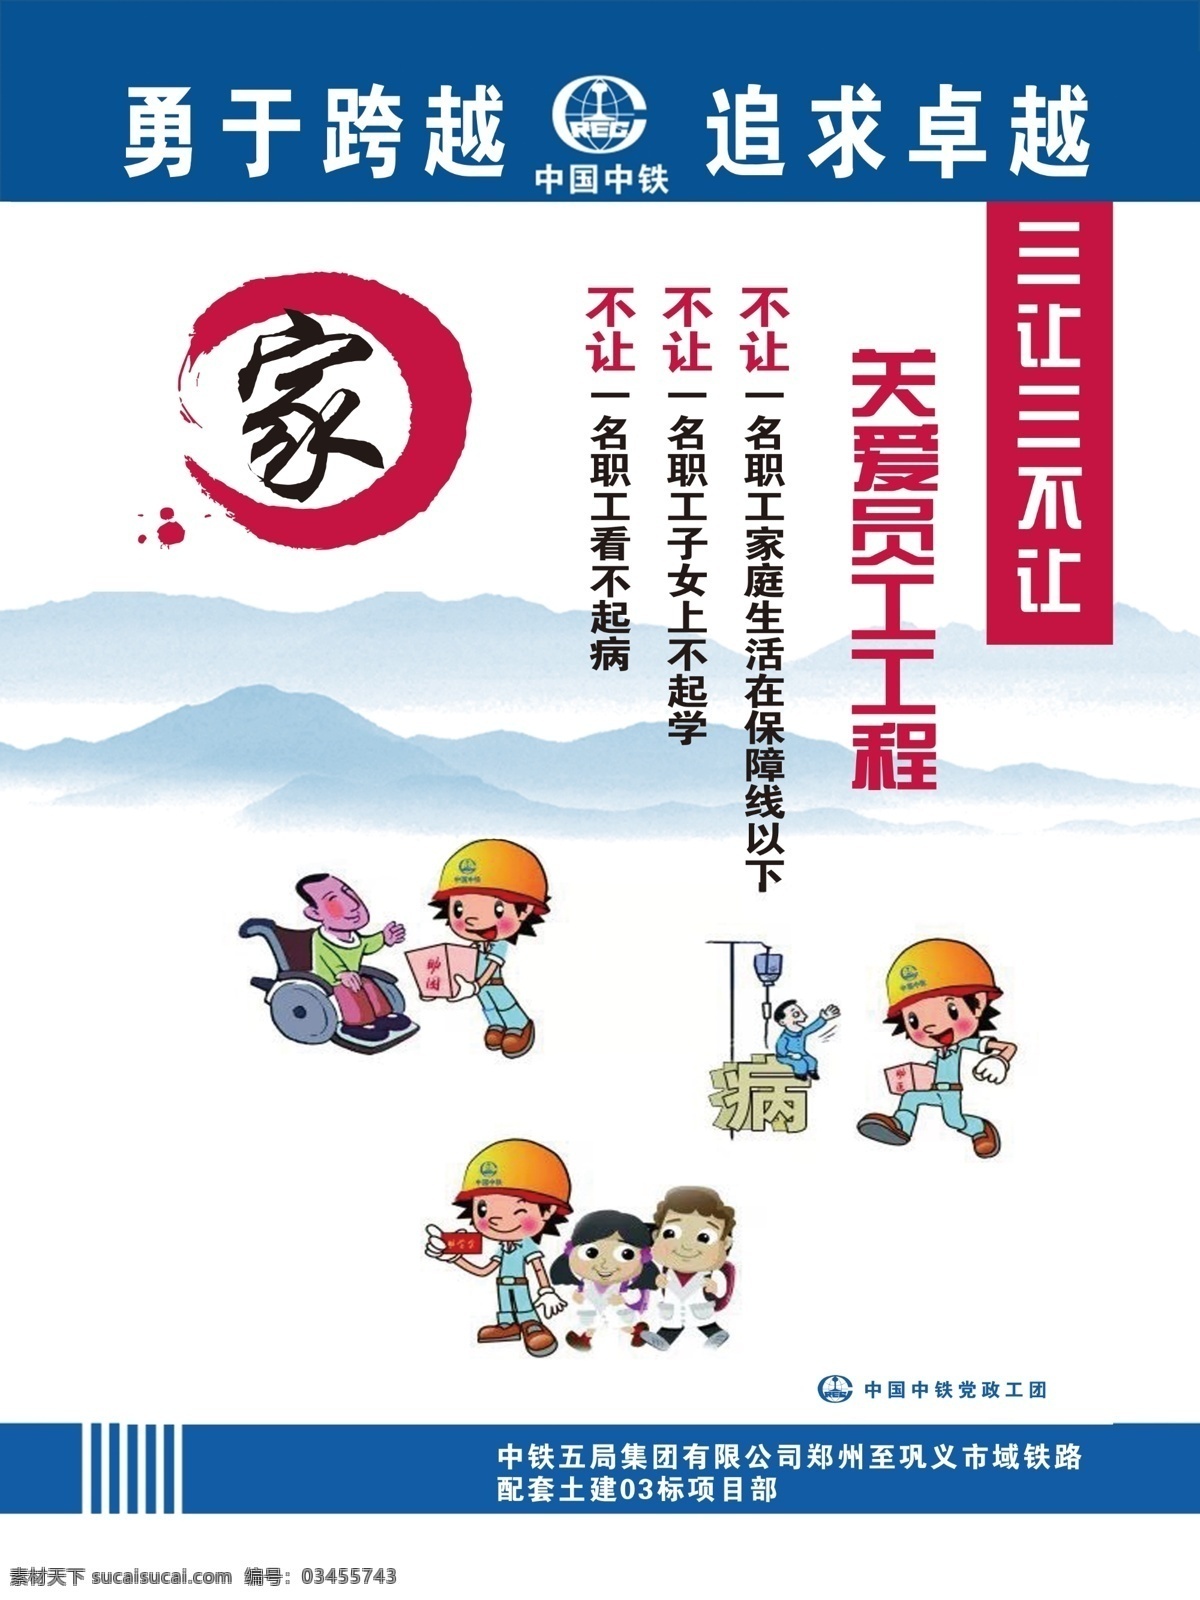 幸福之家 十个一工程 中国中铁 党政工团 勇于跨越 追求卓越 项目部 展板 海报